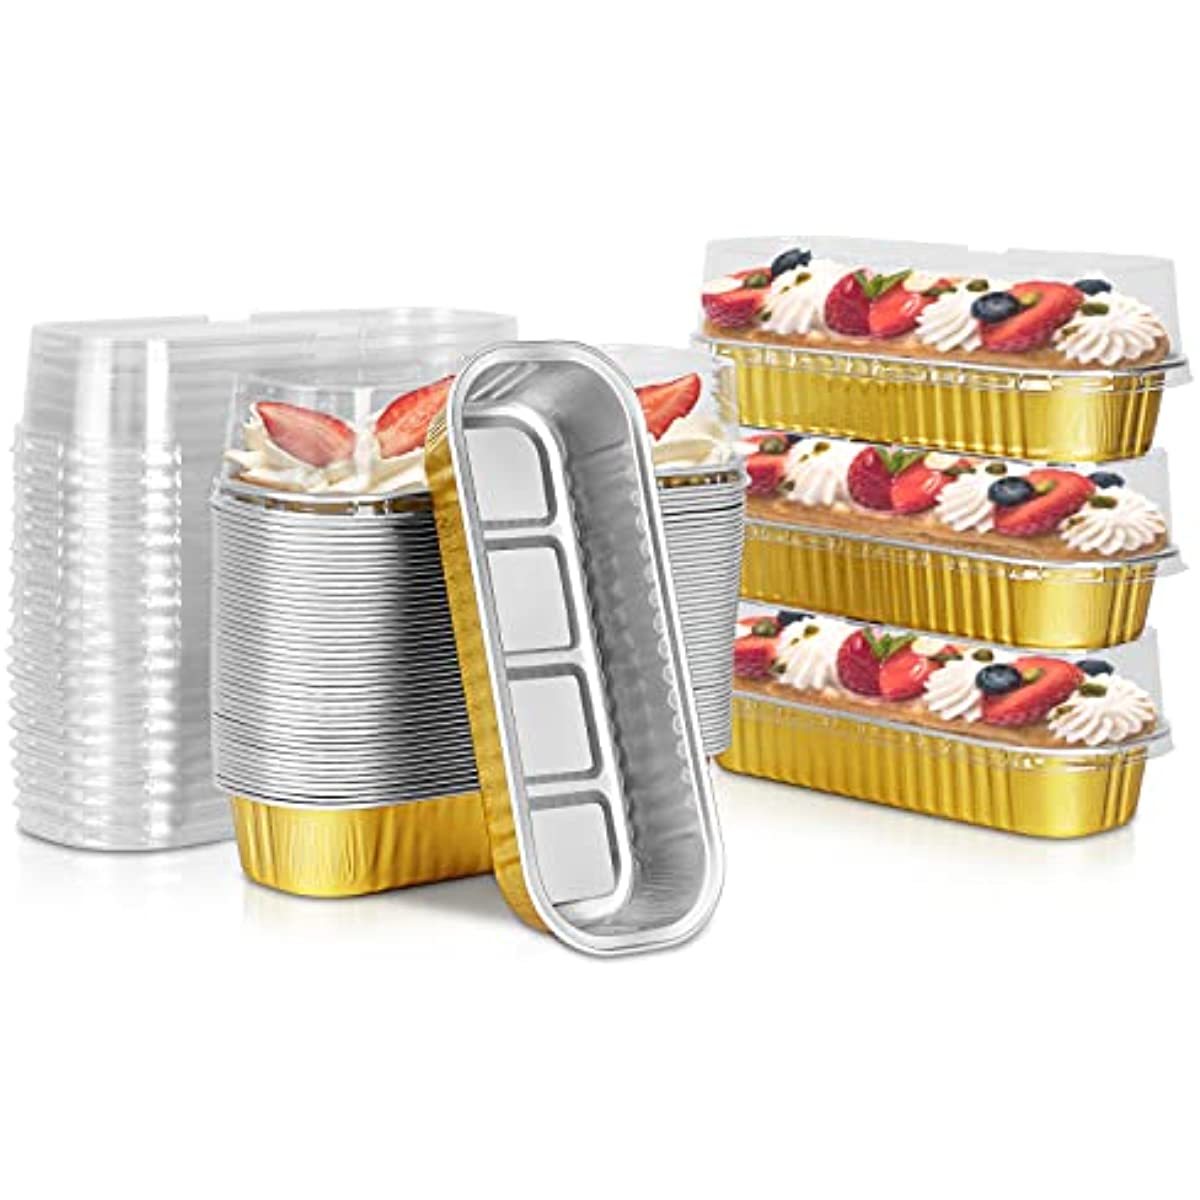 Aluminum Foil Mini Loaf Pans With Lids 50 Packs Baking Cups